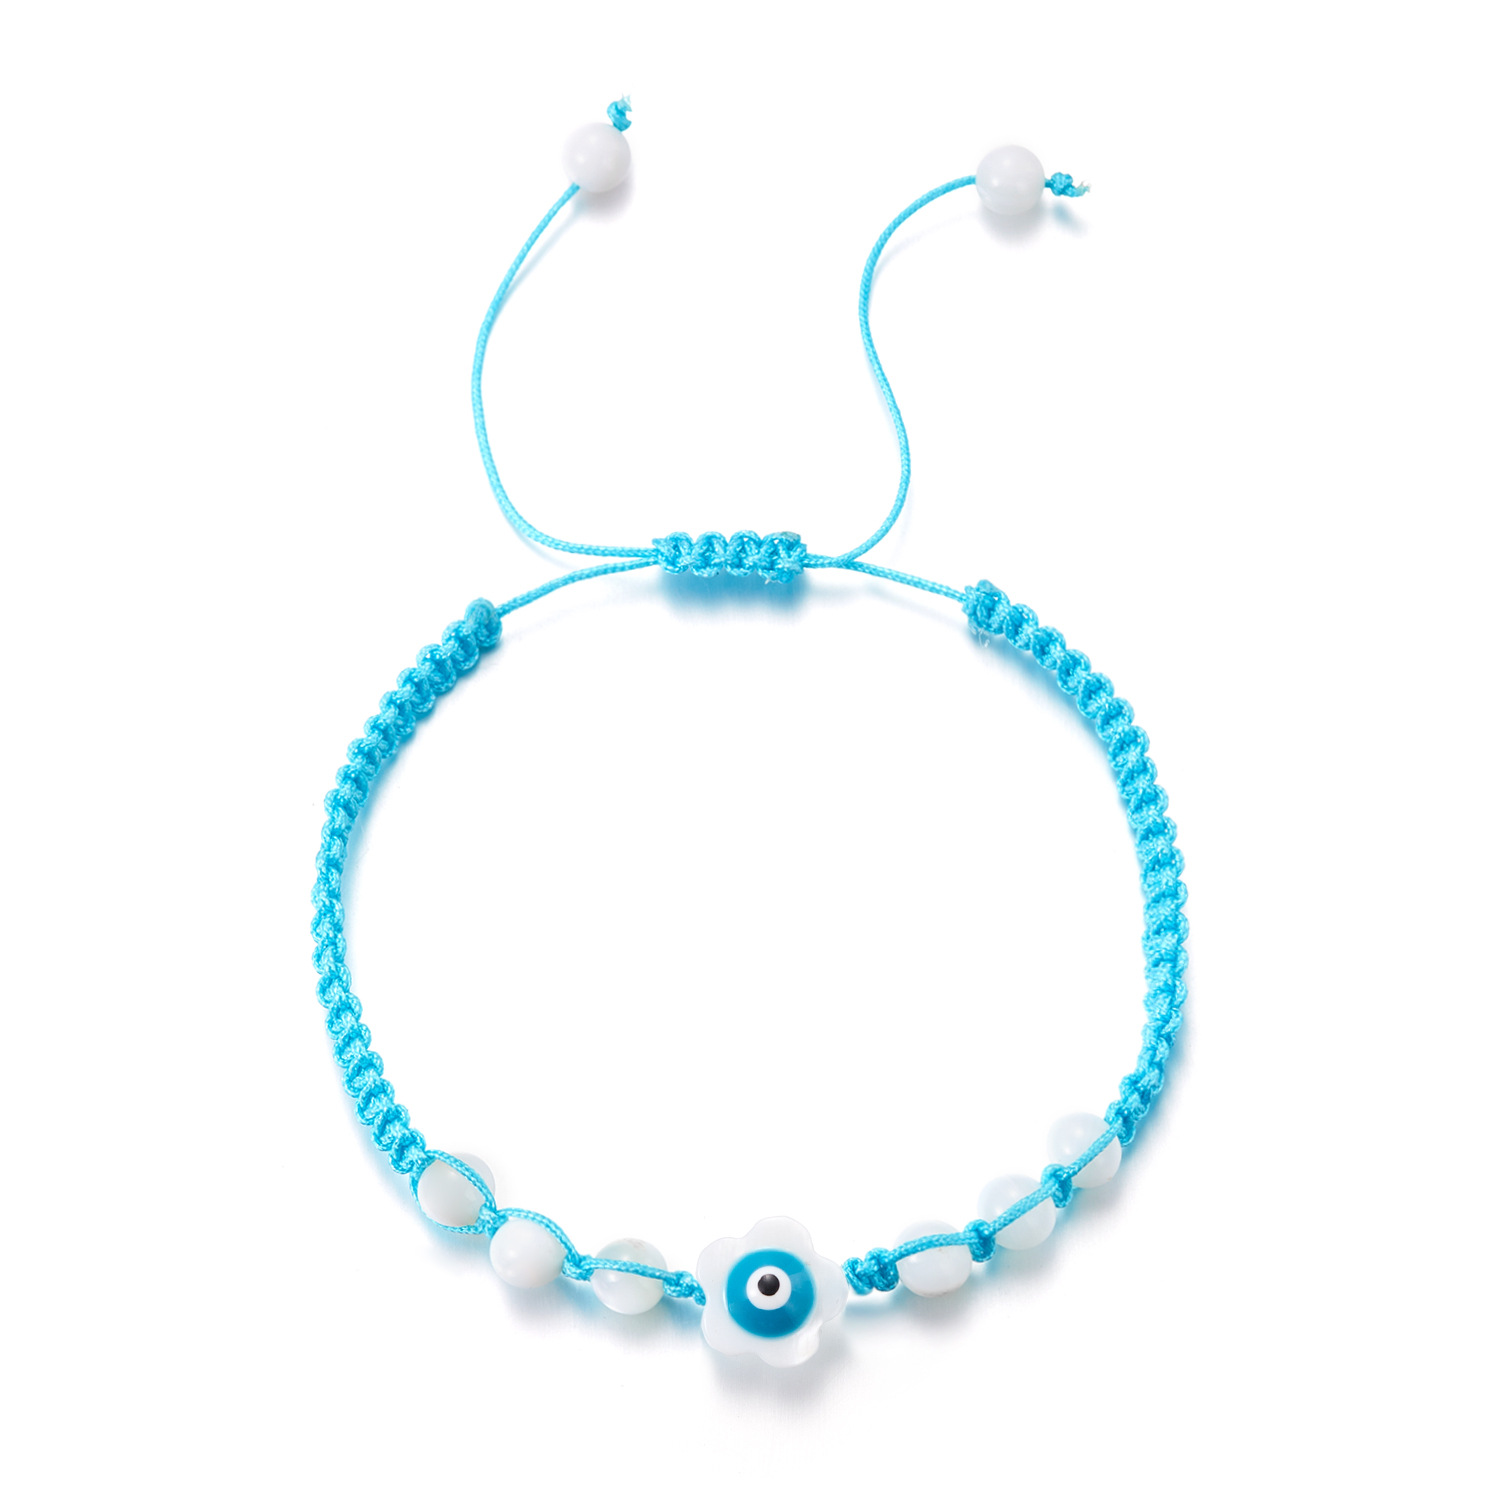 3:Light blue flower eye bracelet